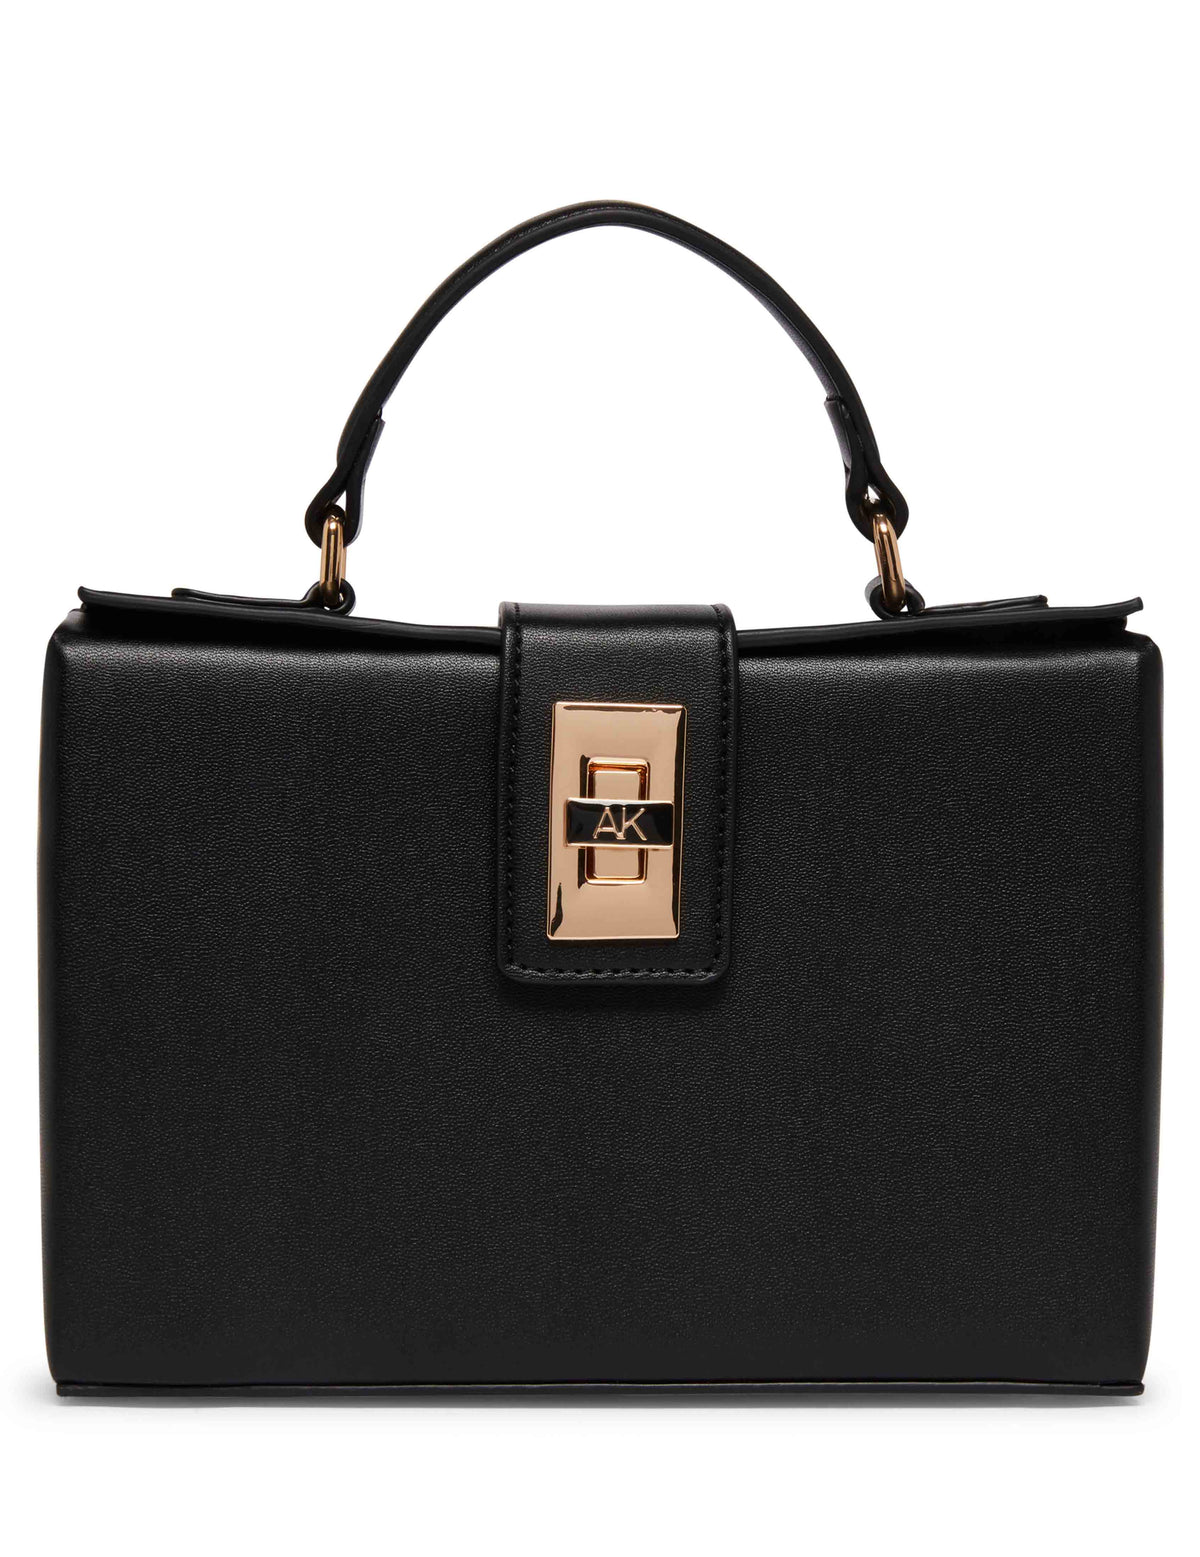 Anne Klein Black/Black Convertible Box Bag With AK Enamel Turn Lock